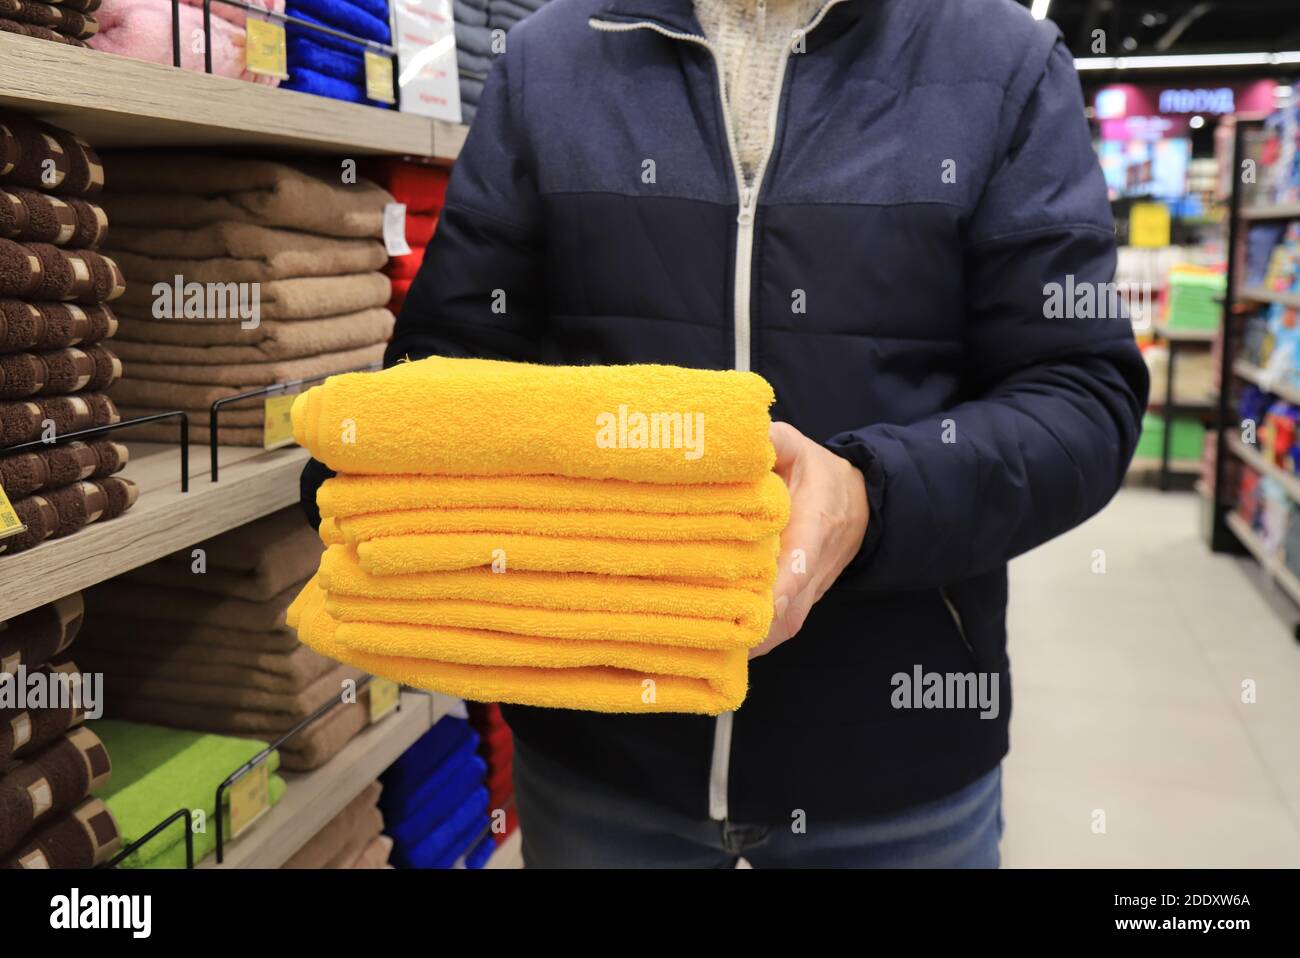 Ein Mann hält einen Stapel Handtücher in einem Geschäft. Hygieneartikel, weiche flauschige gelbe Badetücher im Supermarkt Stockfoto